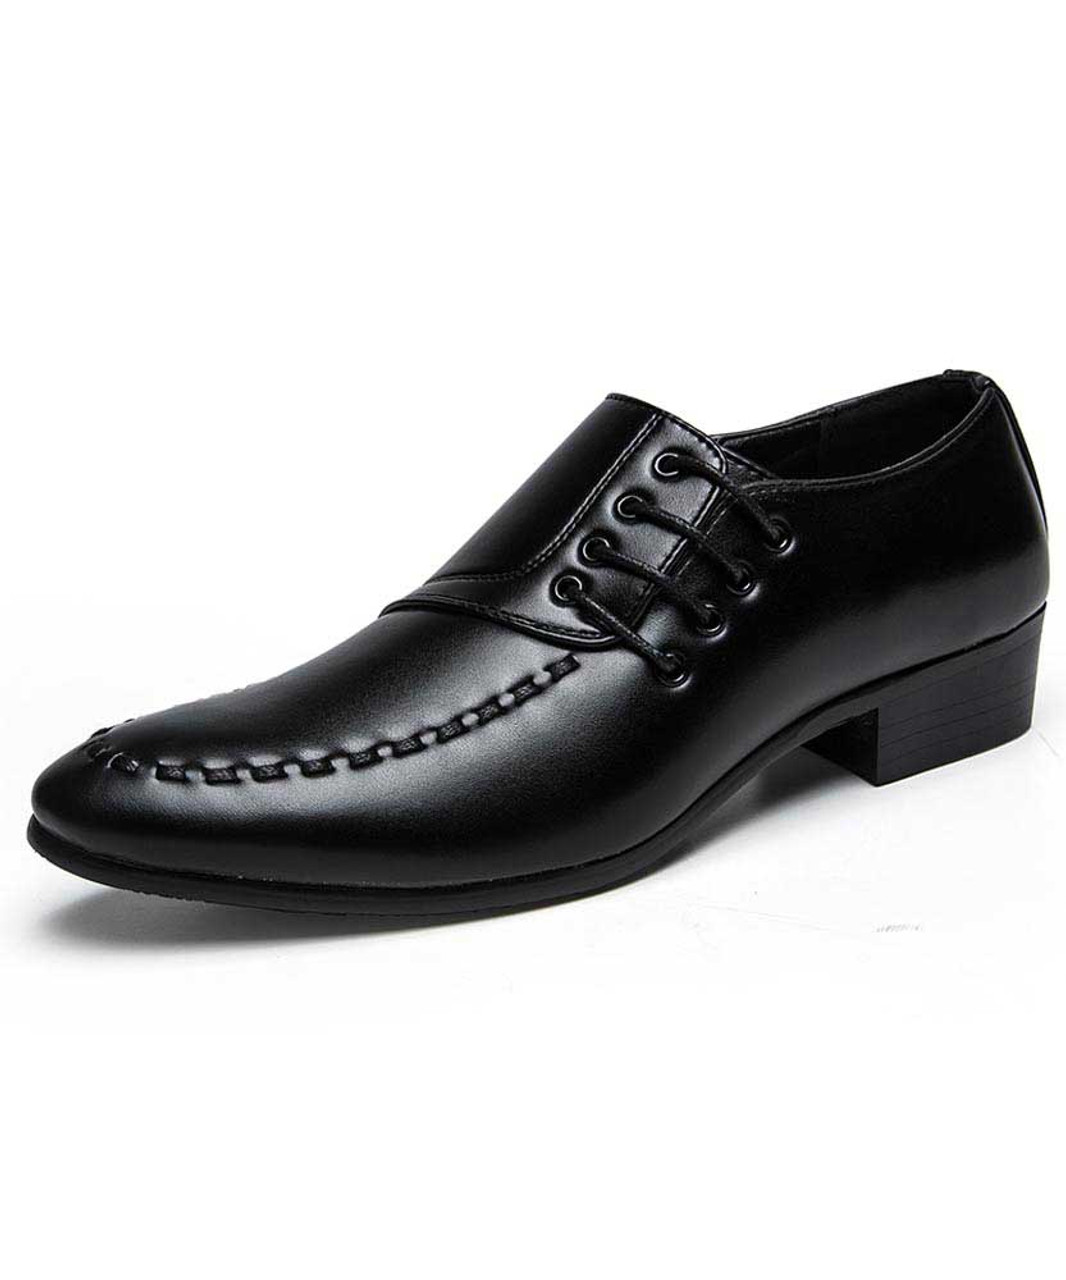 black lace dress shoes